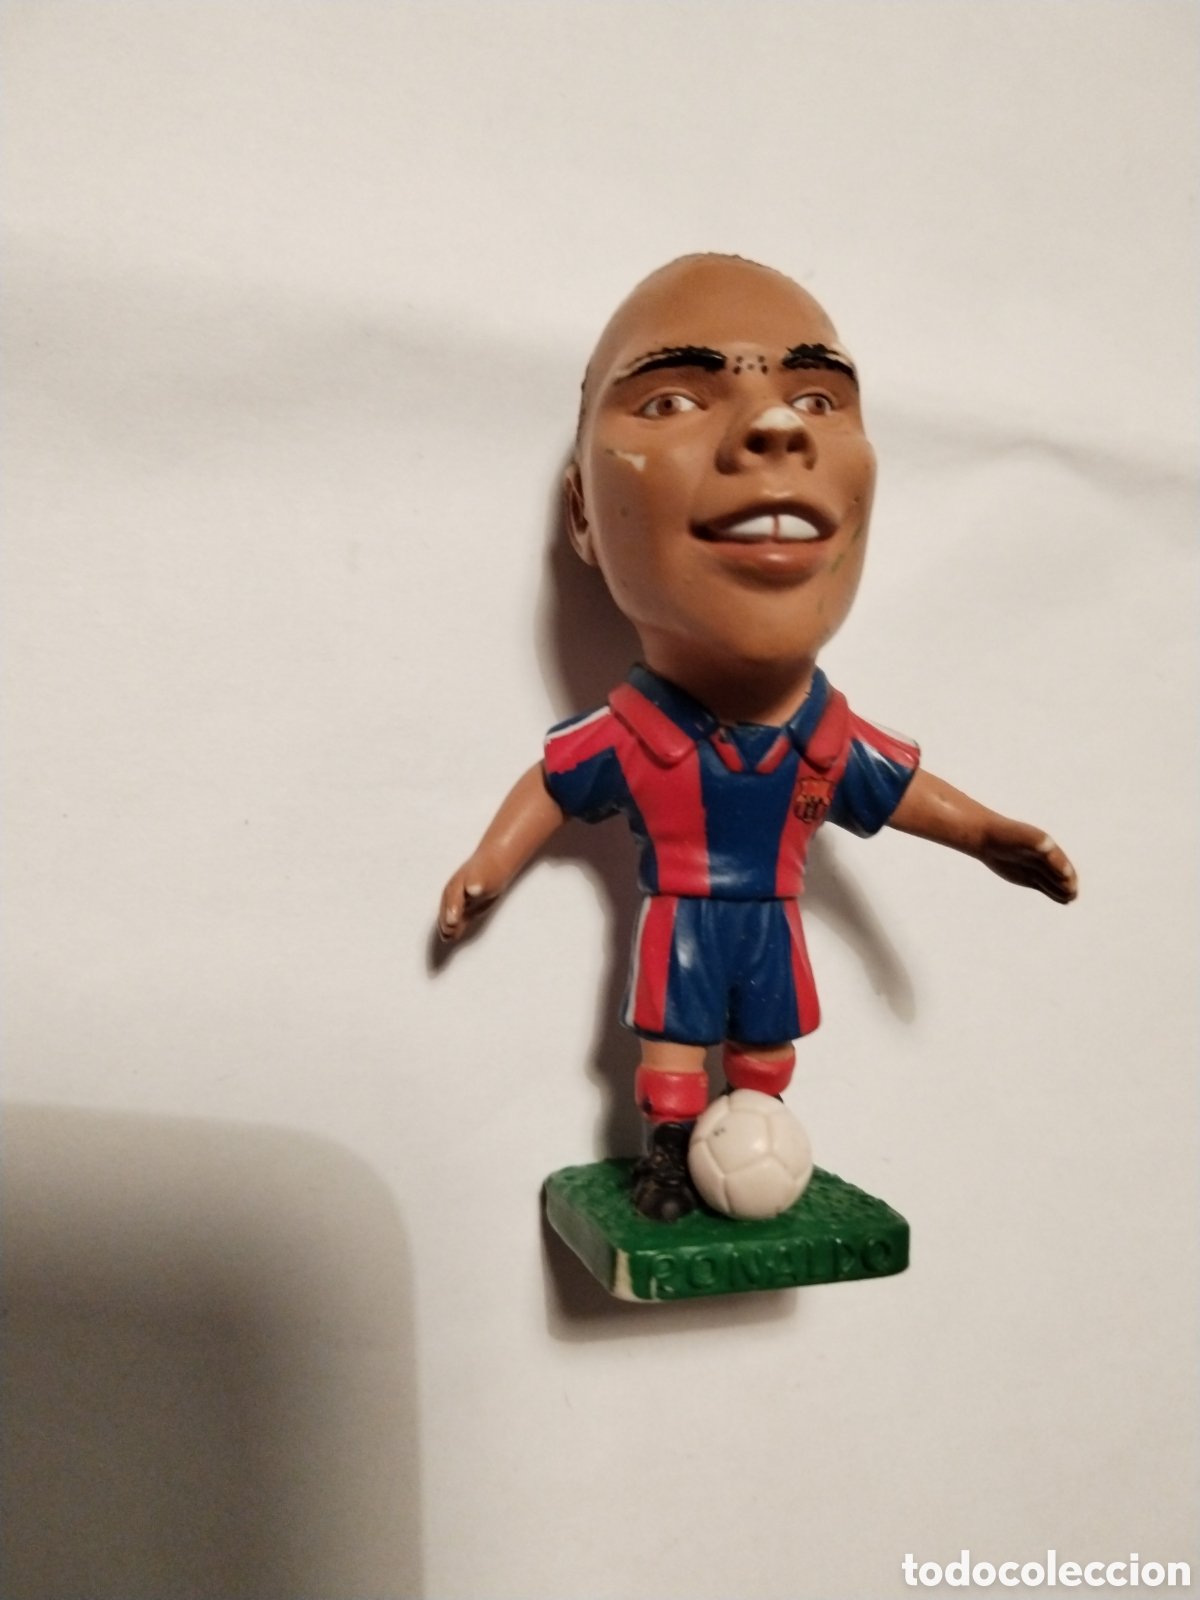 curioso muñeco de plastico ronaldo nazario real - Buy Football  merchandising and mascots on todocoleccion